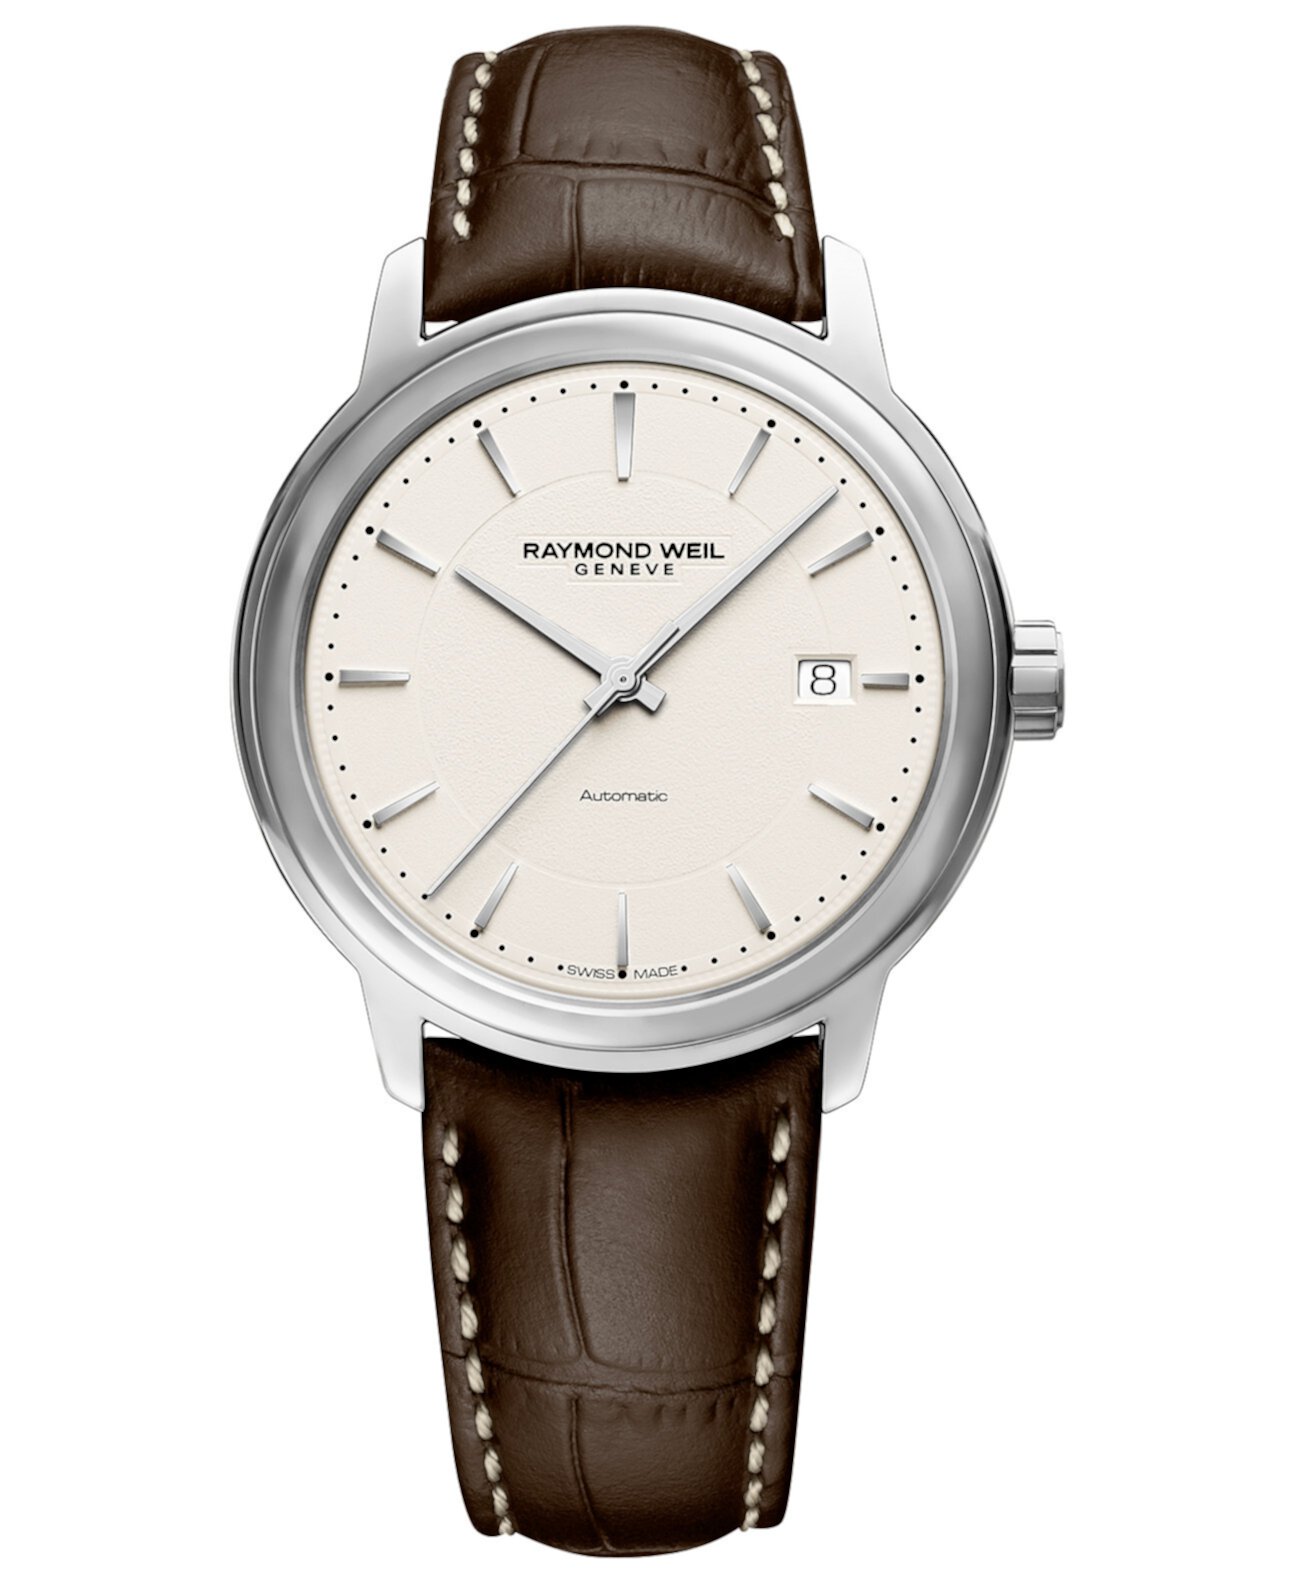 Мужские швейцарские автоматические часы Maestro Brown с кожаным ремешком 40мм Raymond Weil